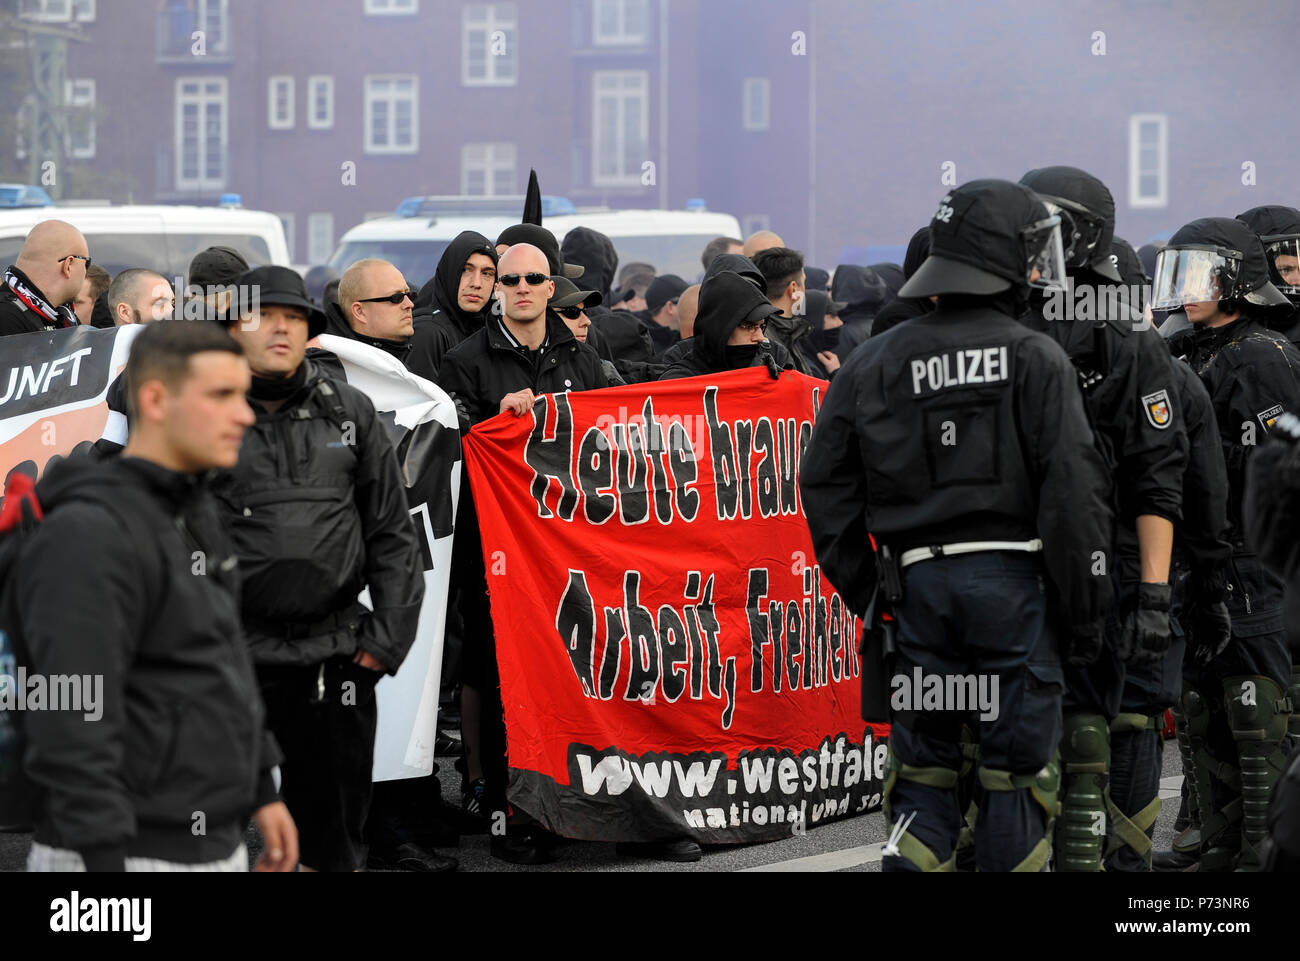 Alemania, el rallye de los nazis y grupos extremistas de derecha en Hamburgo Foto de stock